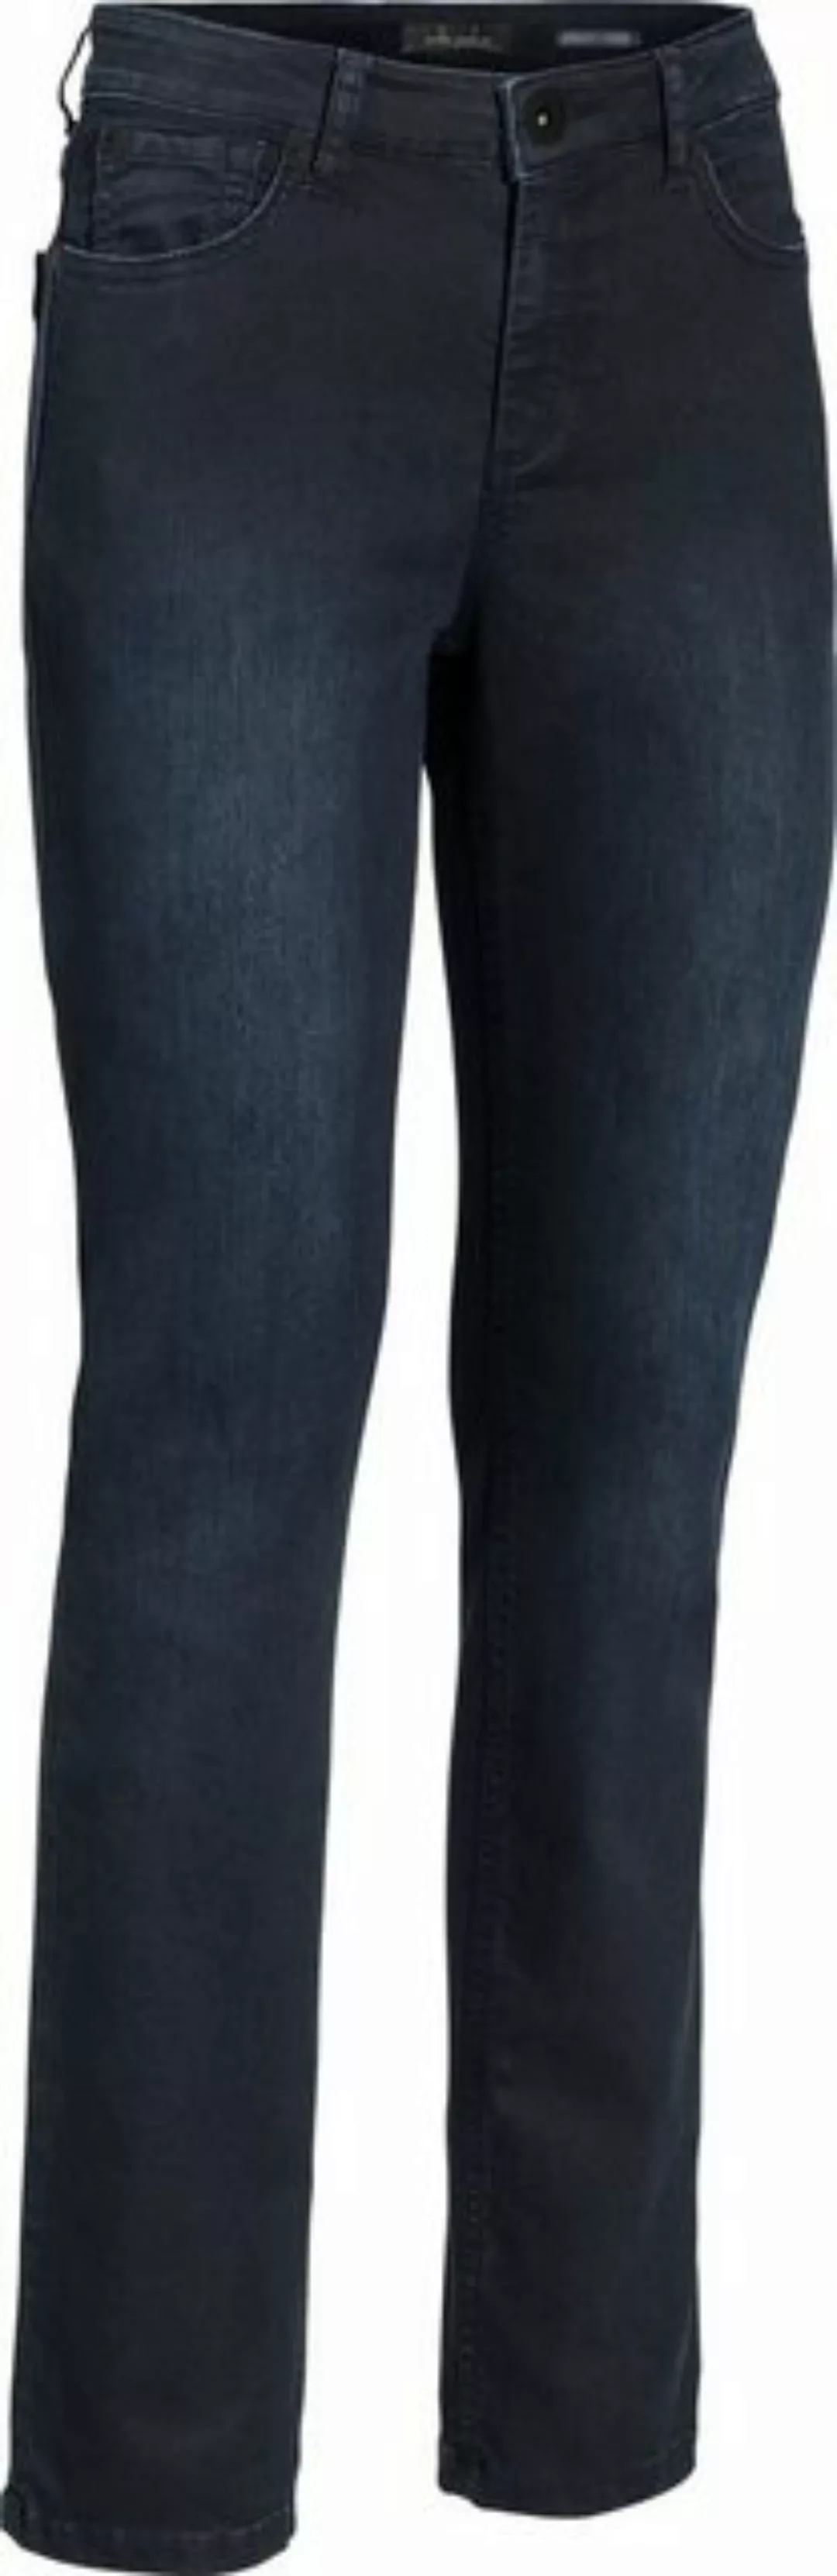 Emilia Parker Stretch-Hose ultrabequeme Jeans mit knackigem Sitz günstig online kaufen